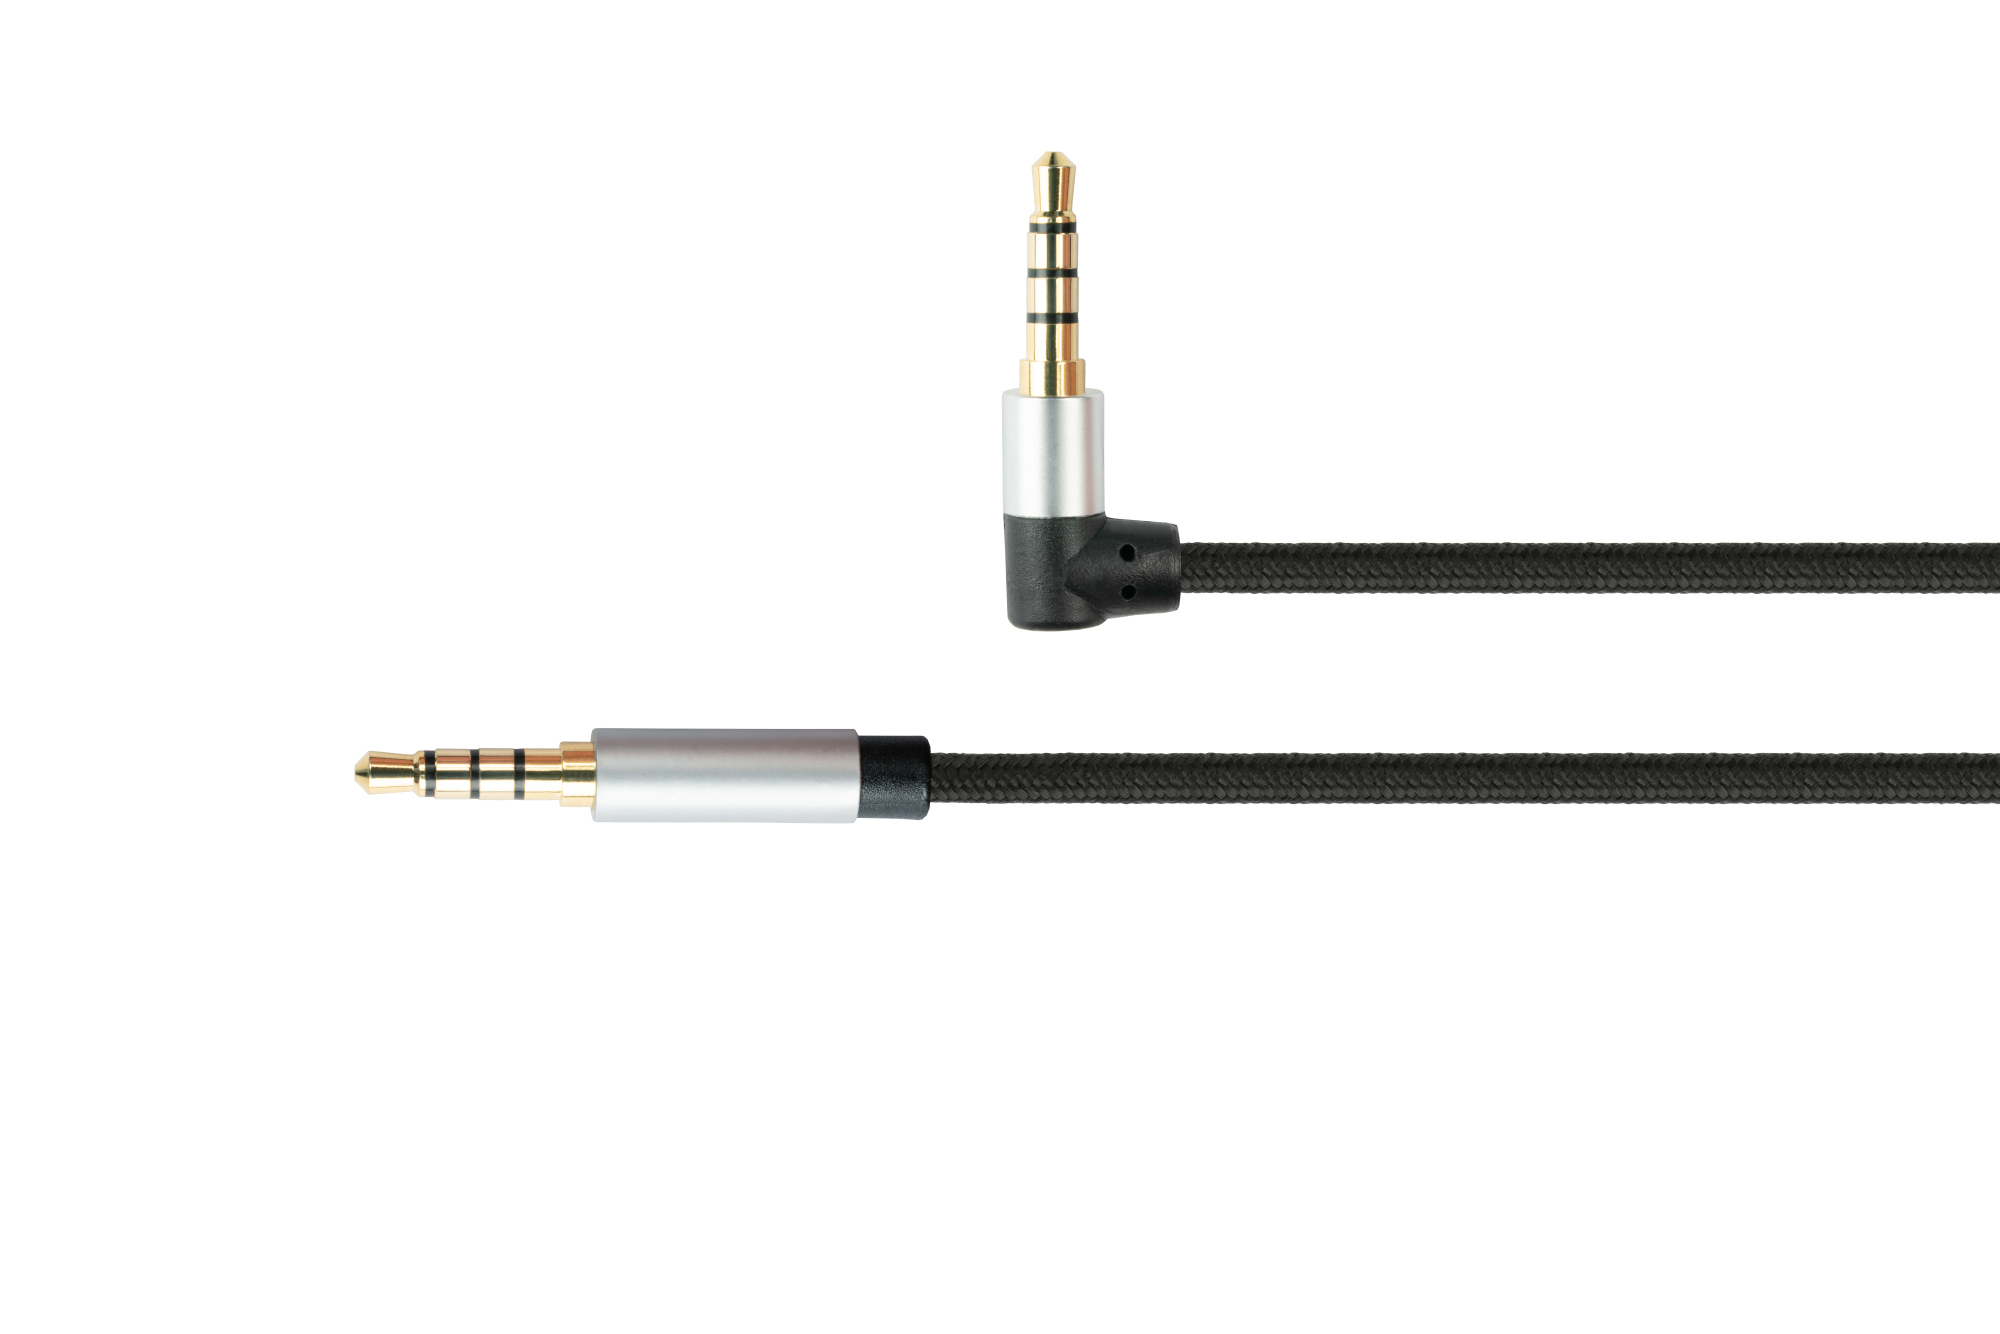 Audio Anschlusskabel High-Quality, 4-poliger 3,5mm Klinkenstecker an Klinkenstecker gewinkelt, Textilmantel, schwarz, 3m